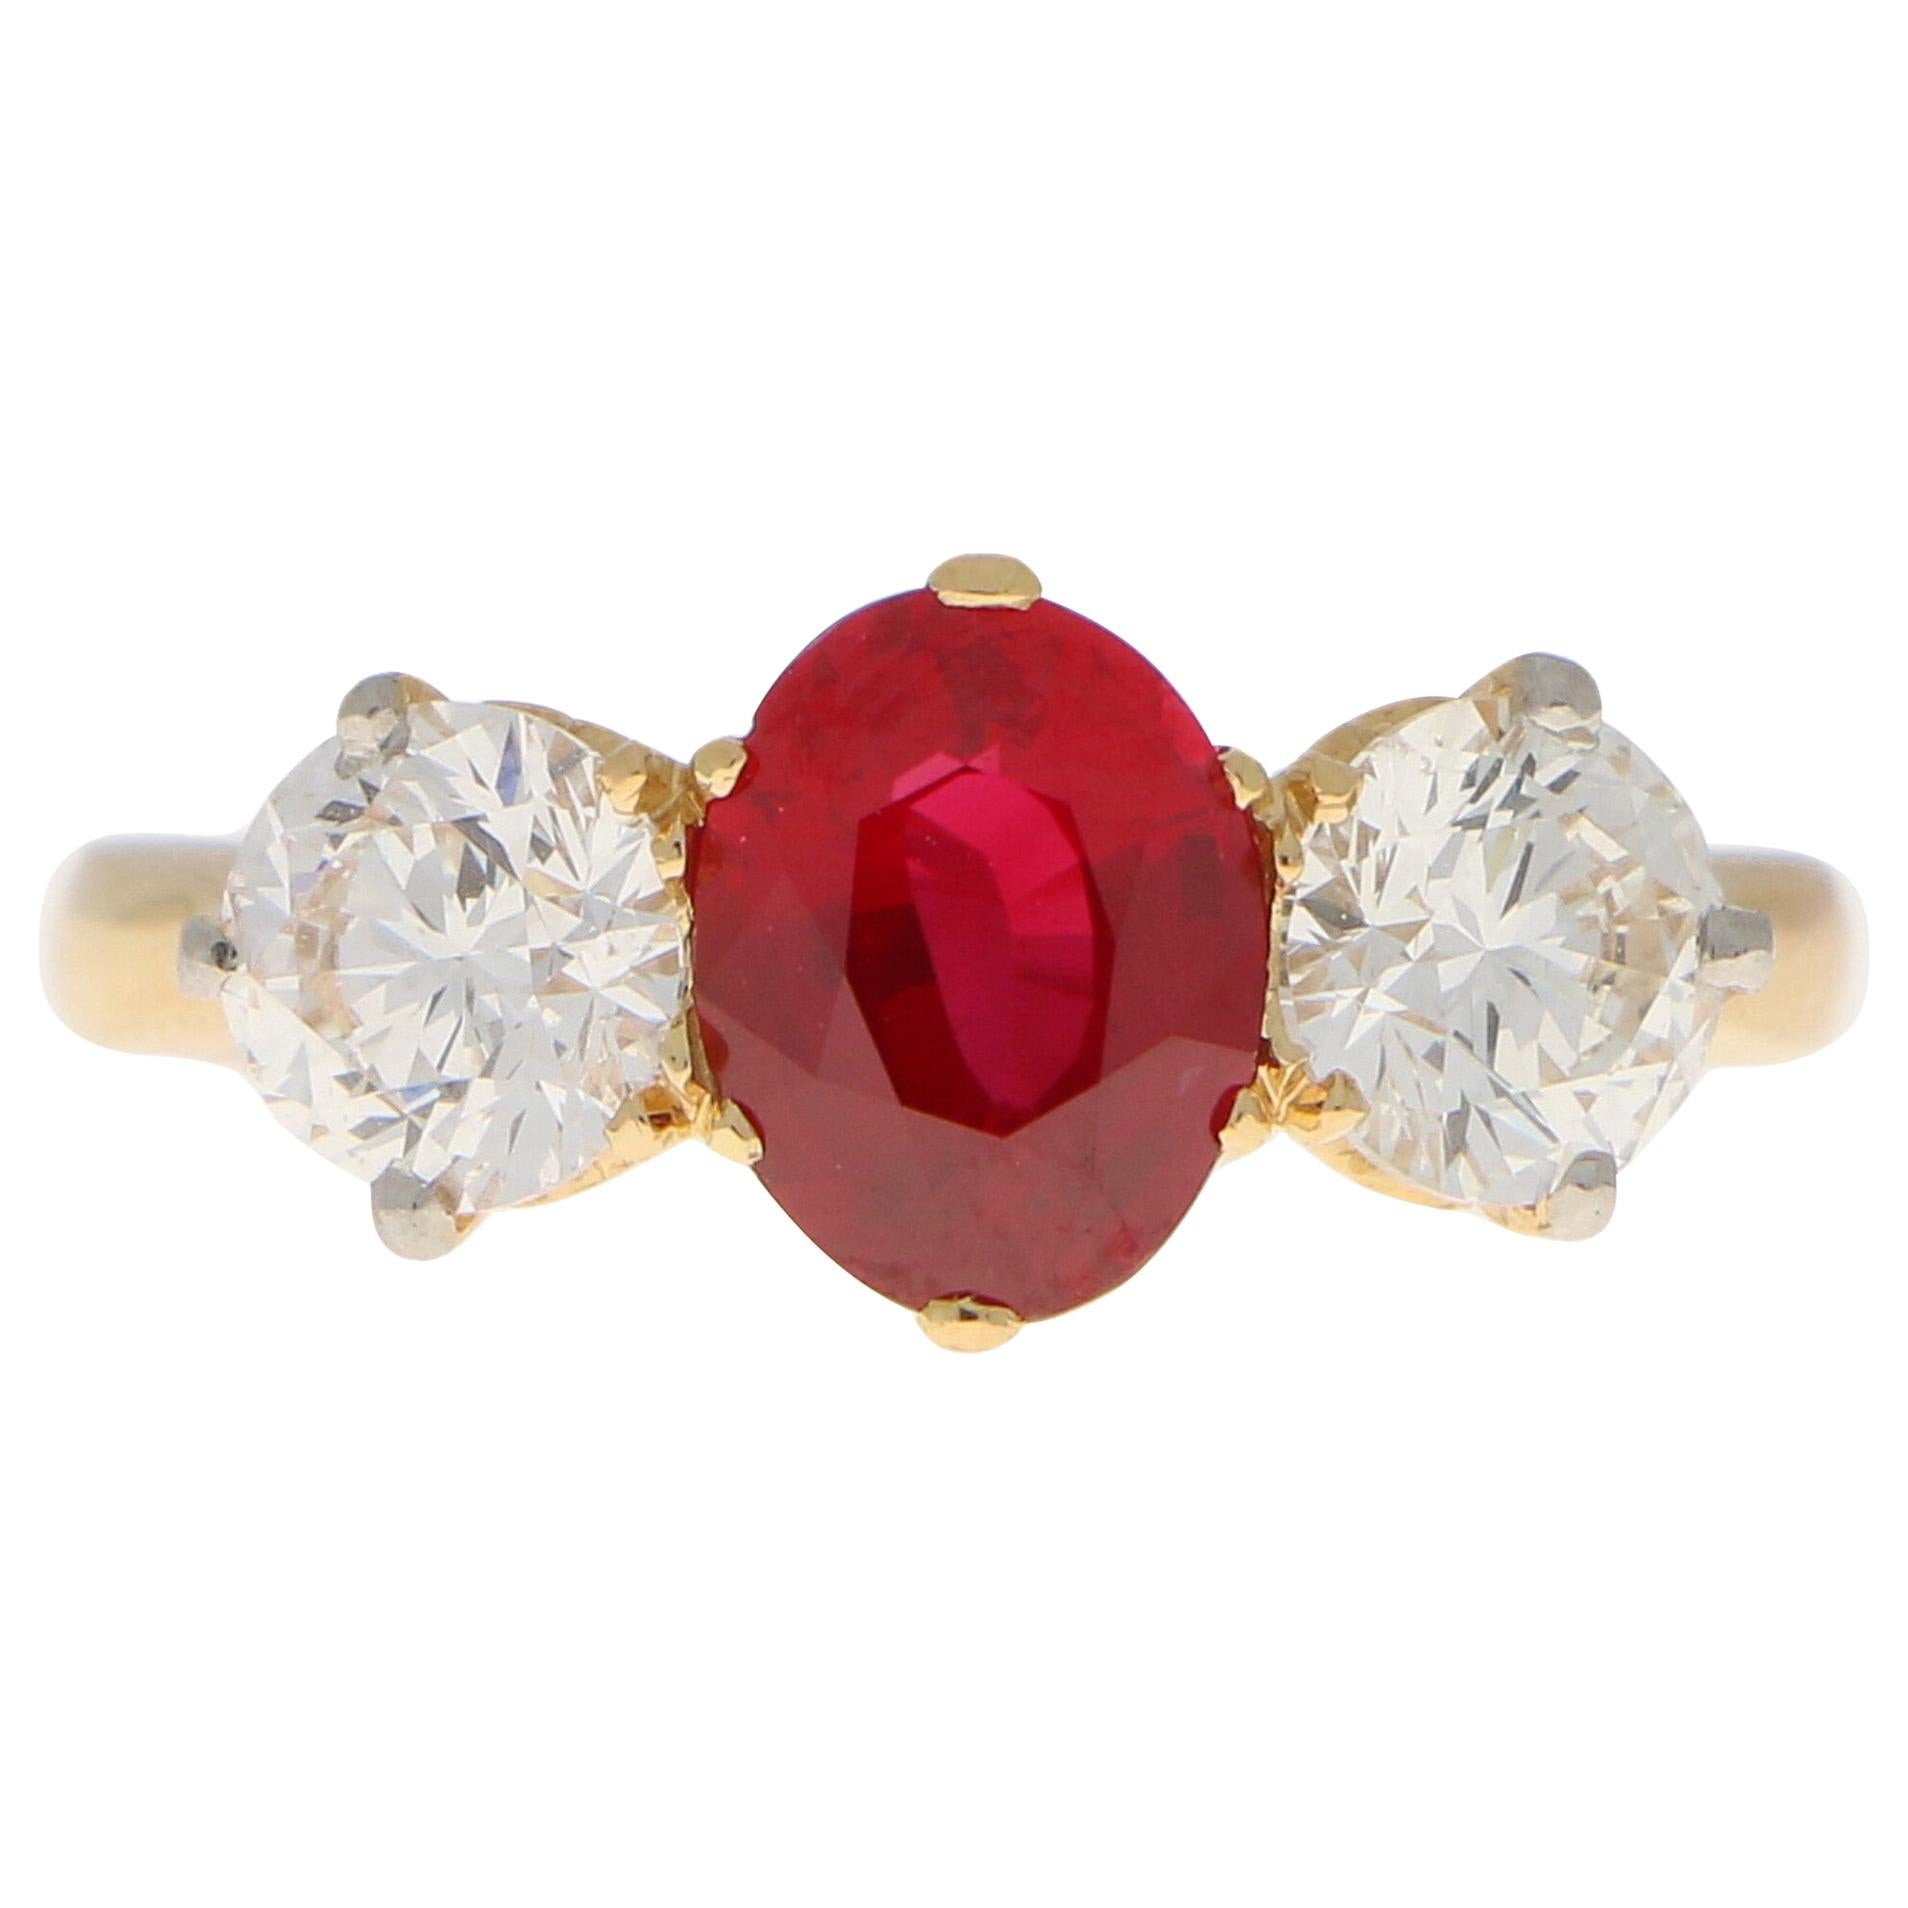 Dreisteiniger Verlobungsring mit rotem Rubin und Diamant, gefasst in 18 Karat Gelbgold